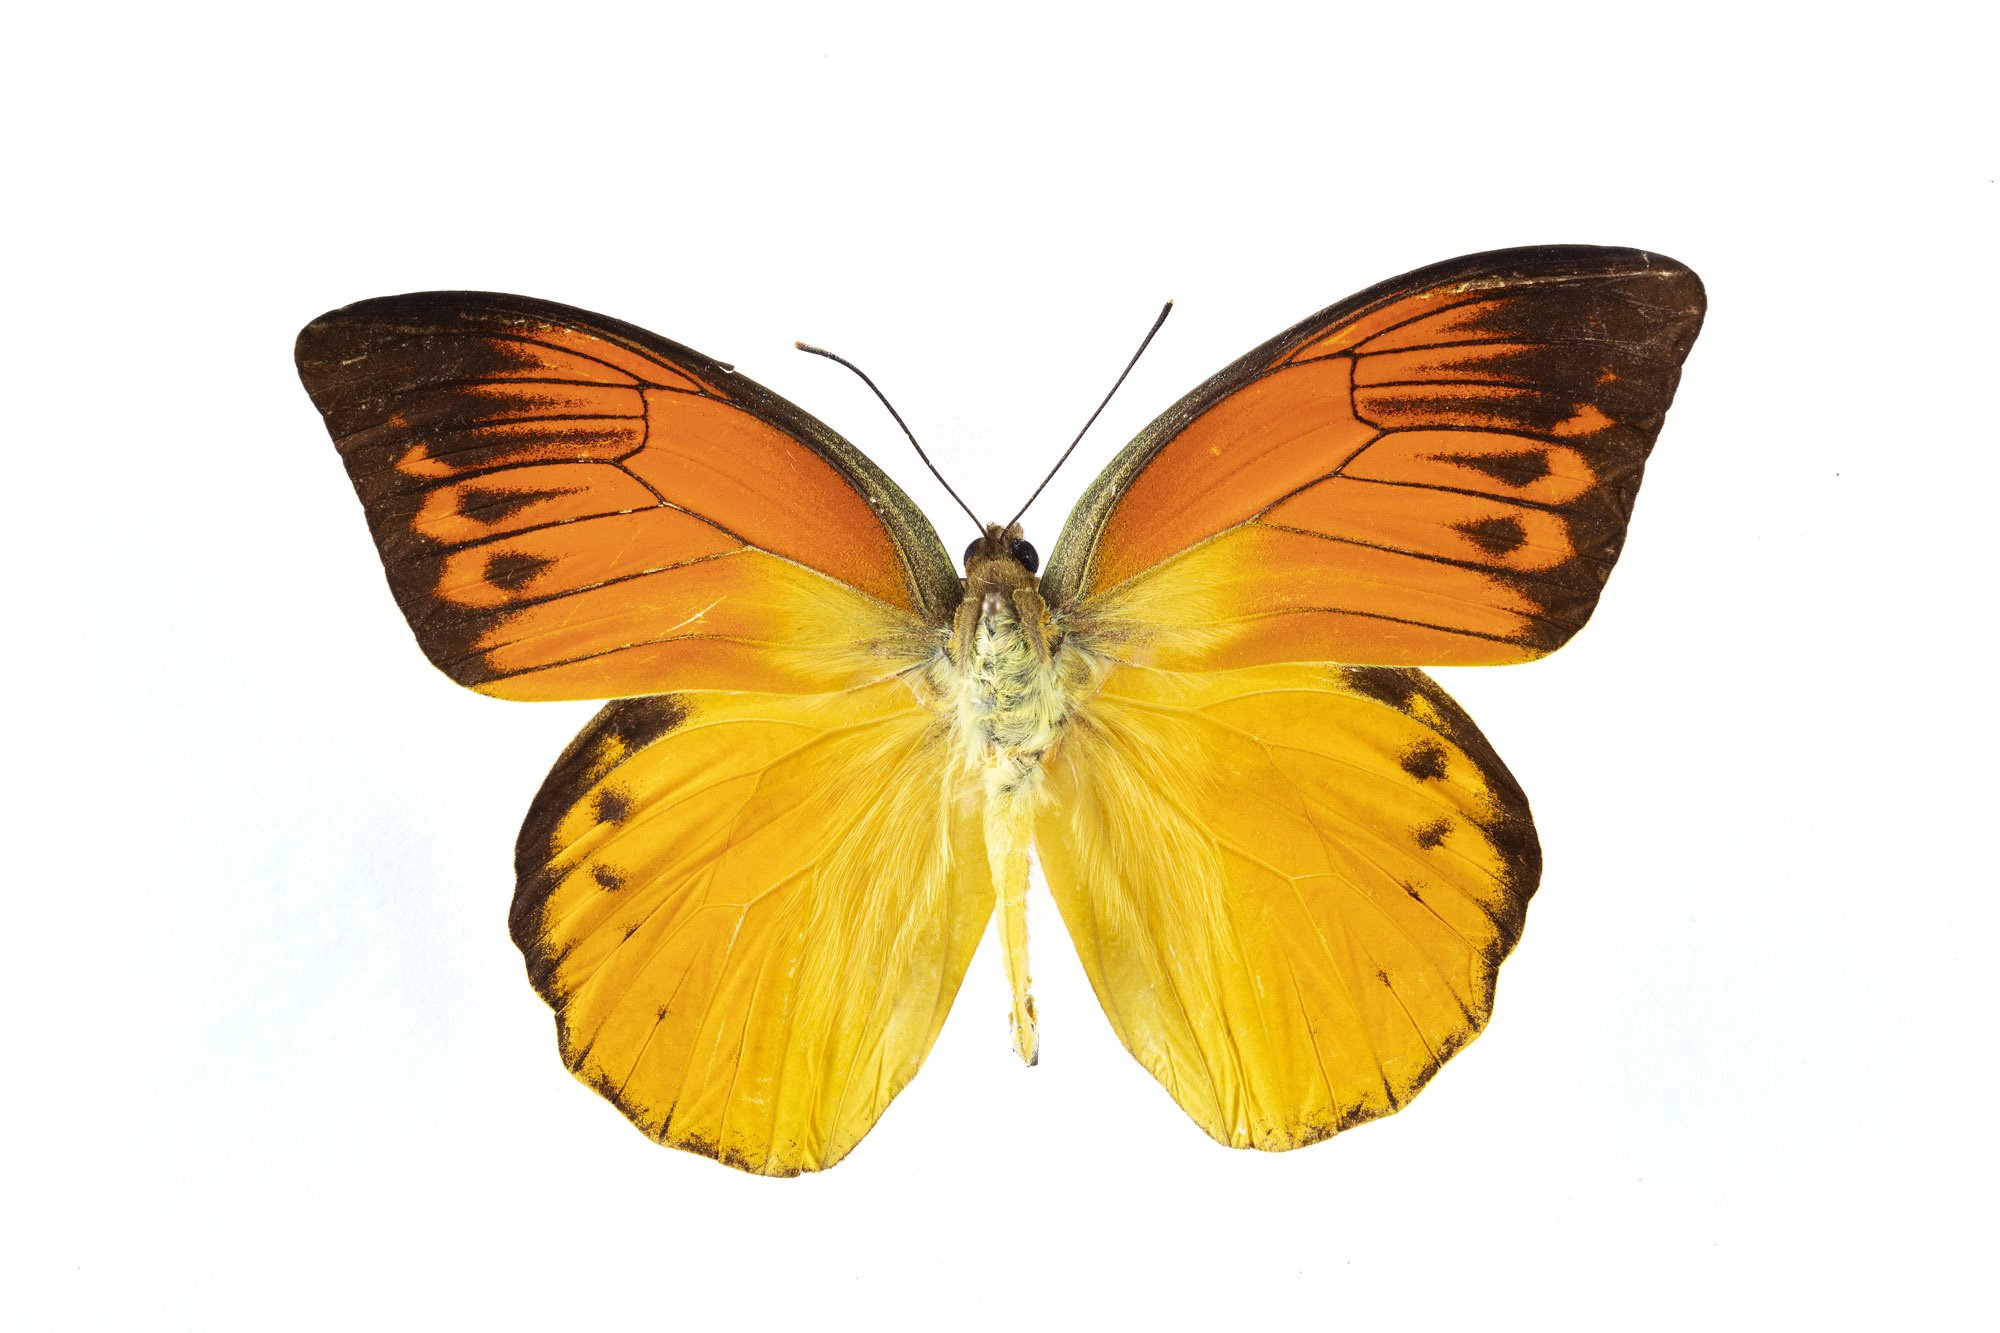 Brimstone Butterfly / Hebomoia leucippe